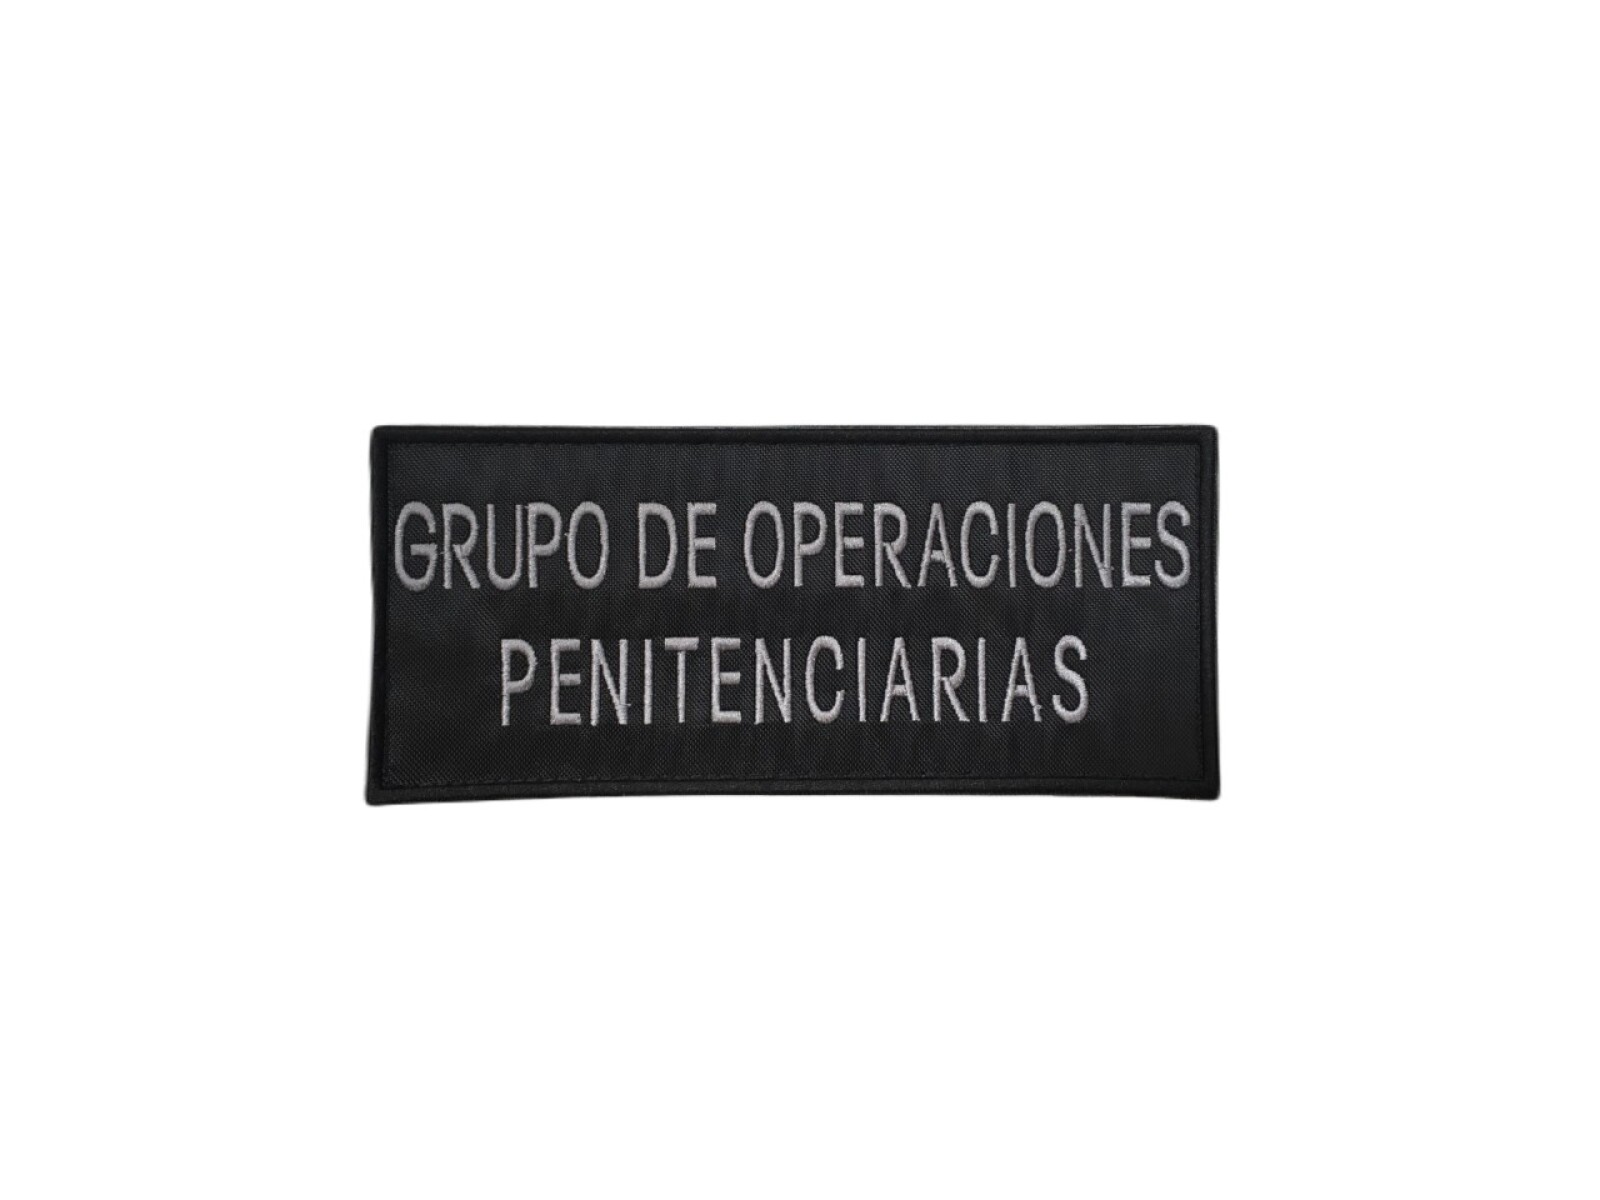 Parche bordado para chaleco - Grupo de Operaciones Penitenciarias 